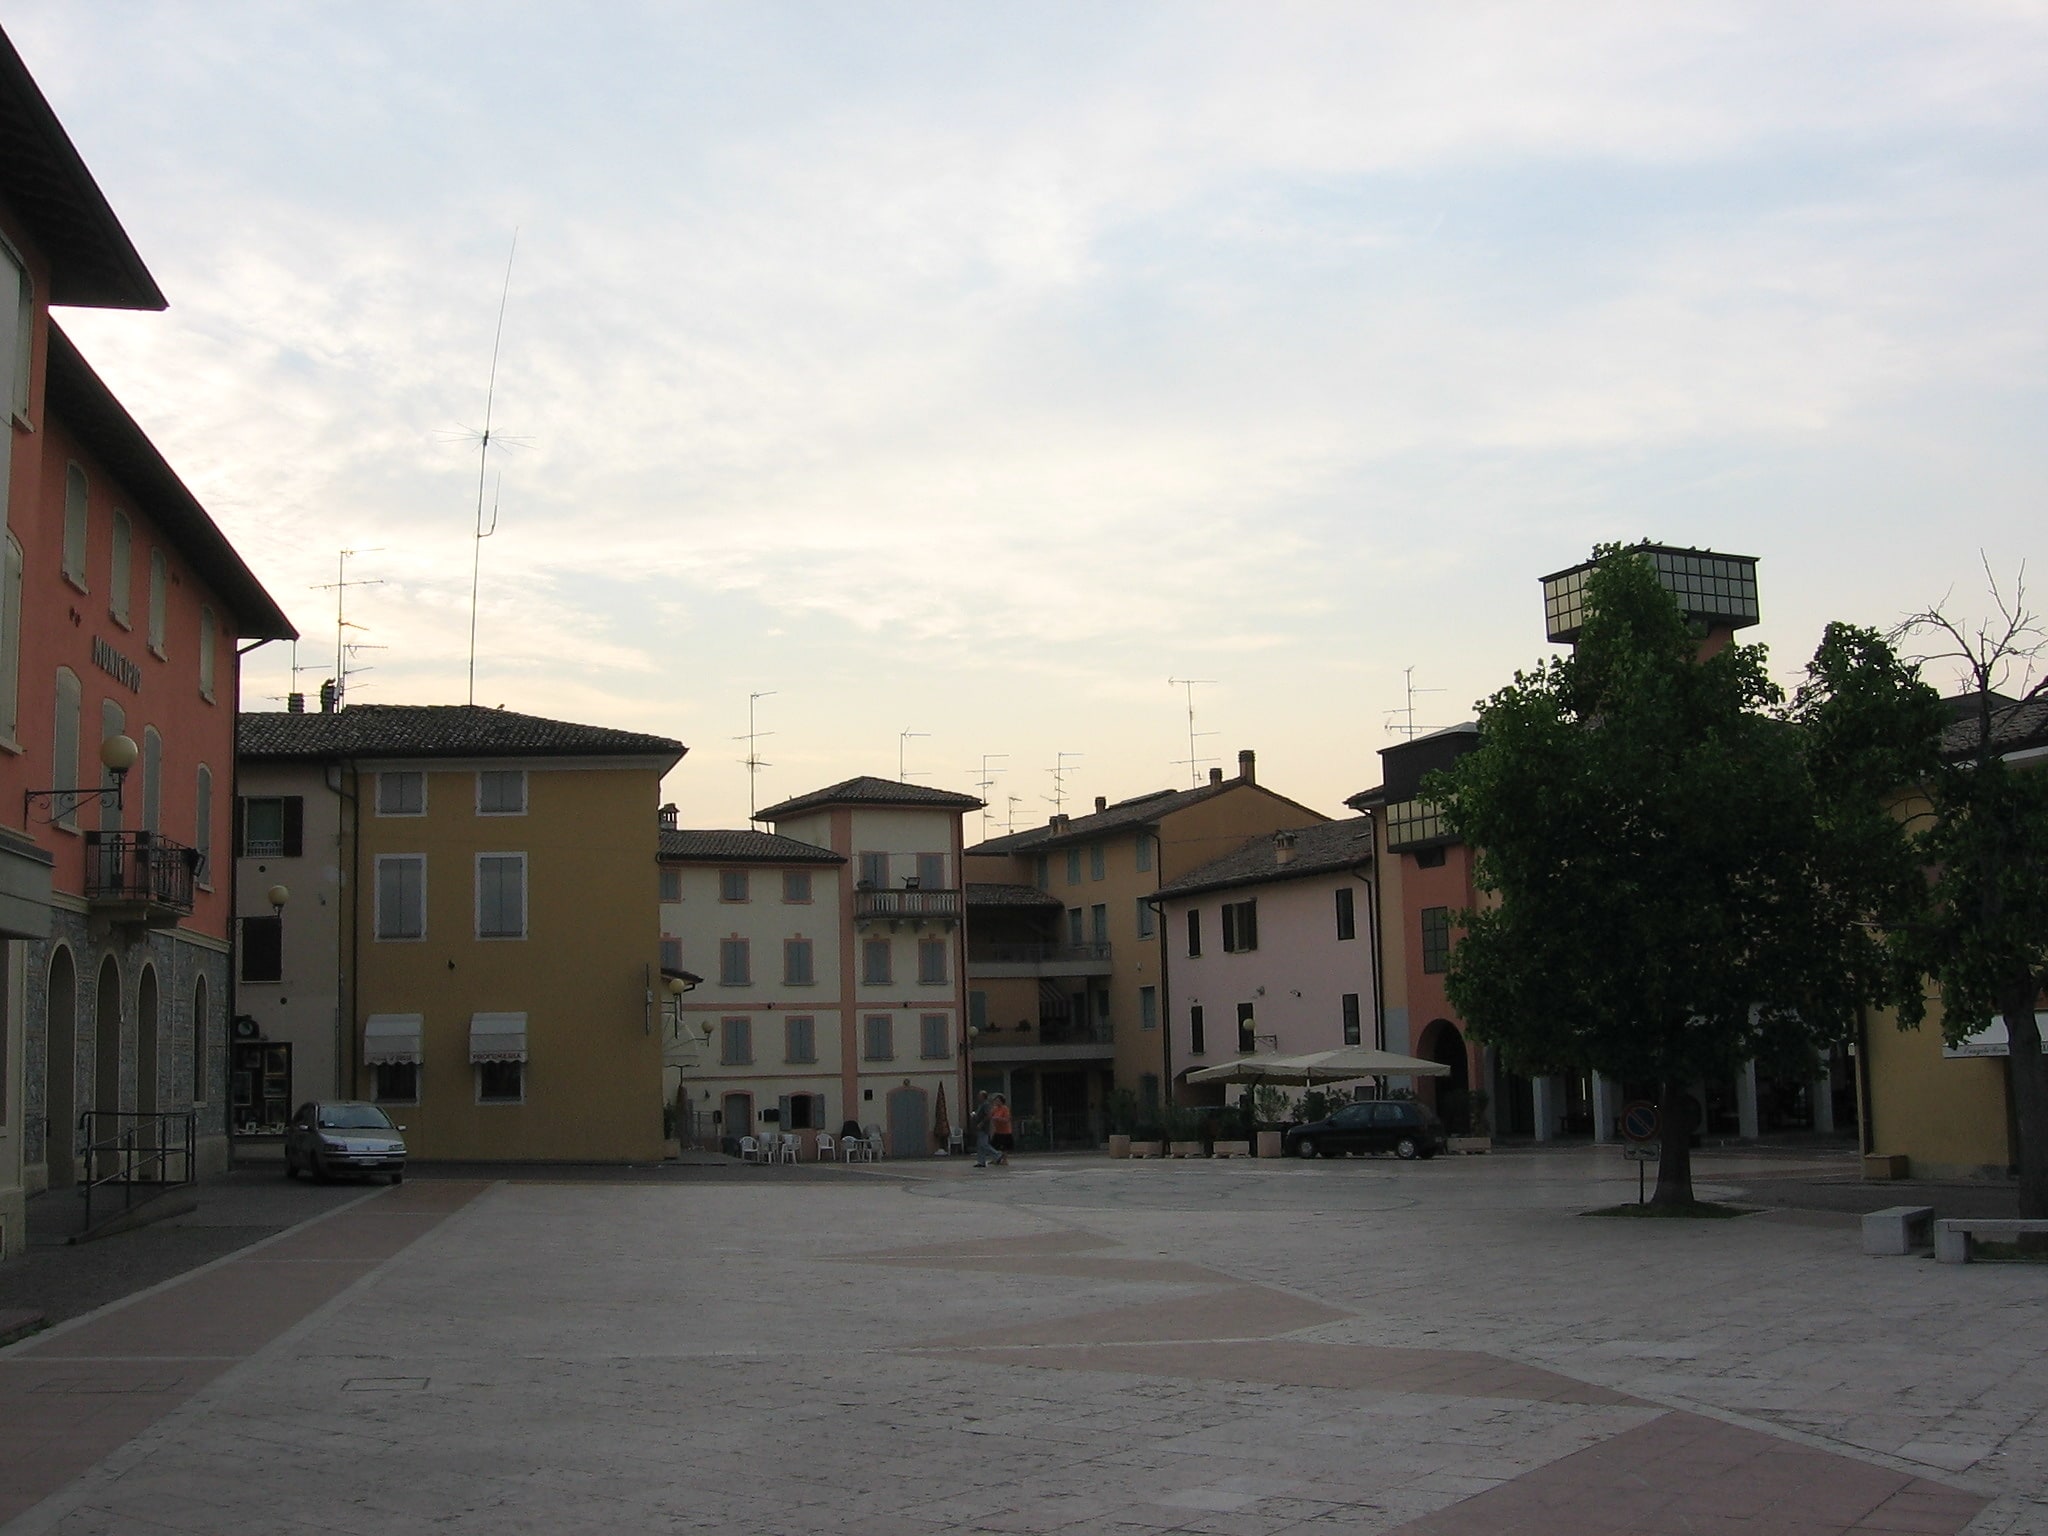 Quattro Castella, Italy